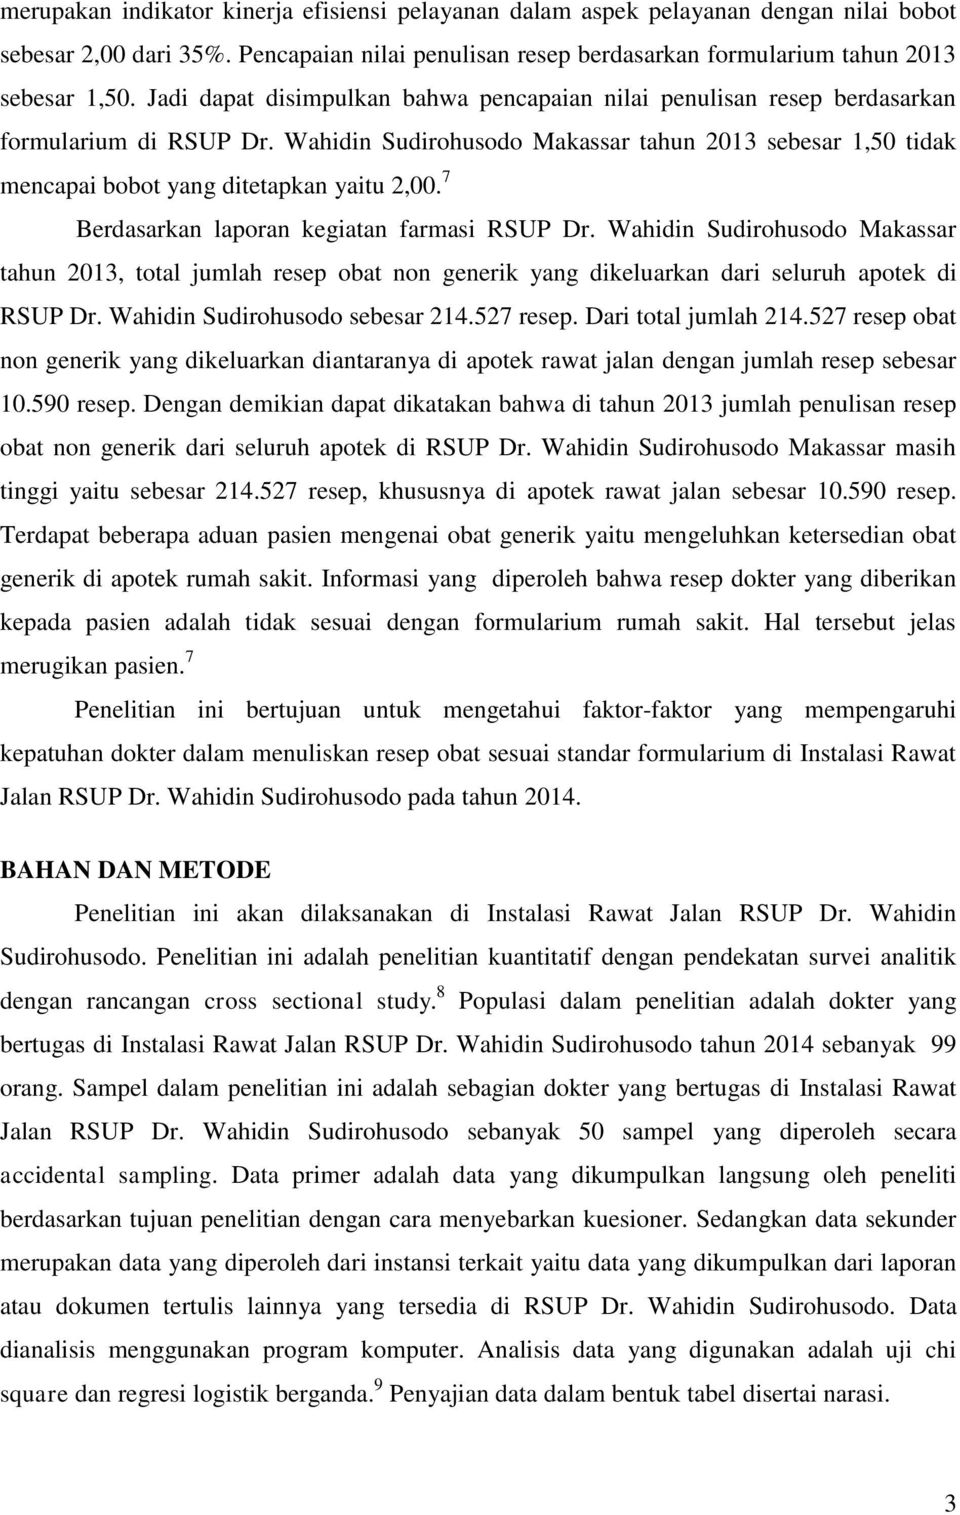 7 Berdasarkan laporan kegiatan farmasi RSUP Dr. Wahidin Sudirohusodo Makassar tahun 2013, total jumlah resep obat non generik yang dikeluarkan dari seluruh apotek di RSUP Dr.